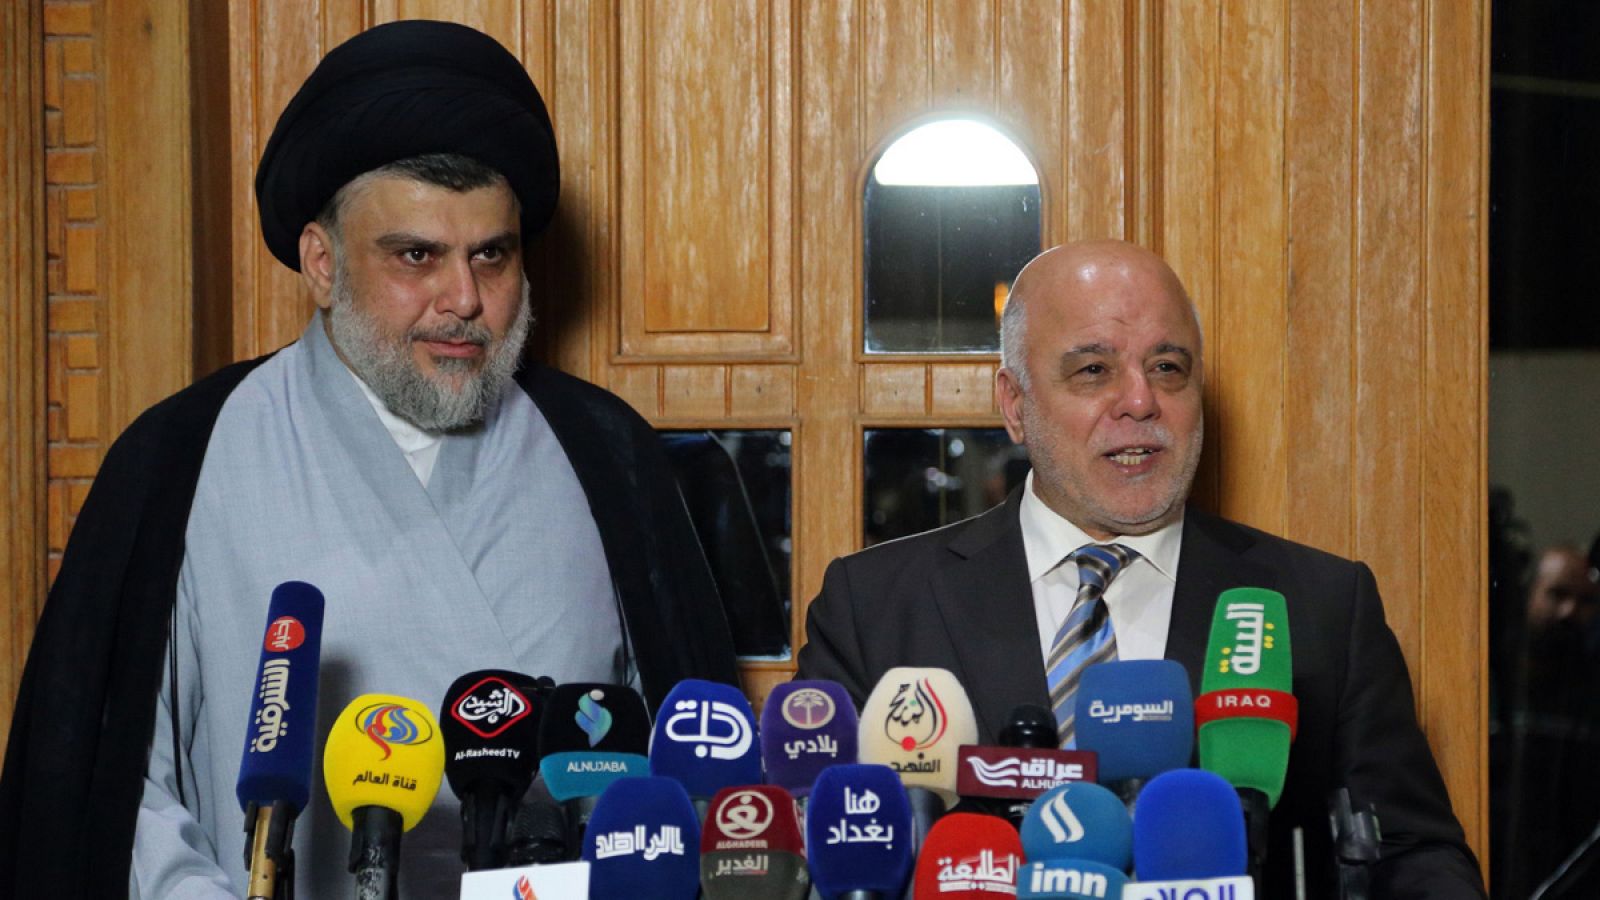 El clérigo chií Muqtada al Sadr y el primer ministro en funciones, Haider al Abadi